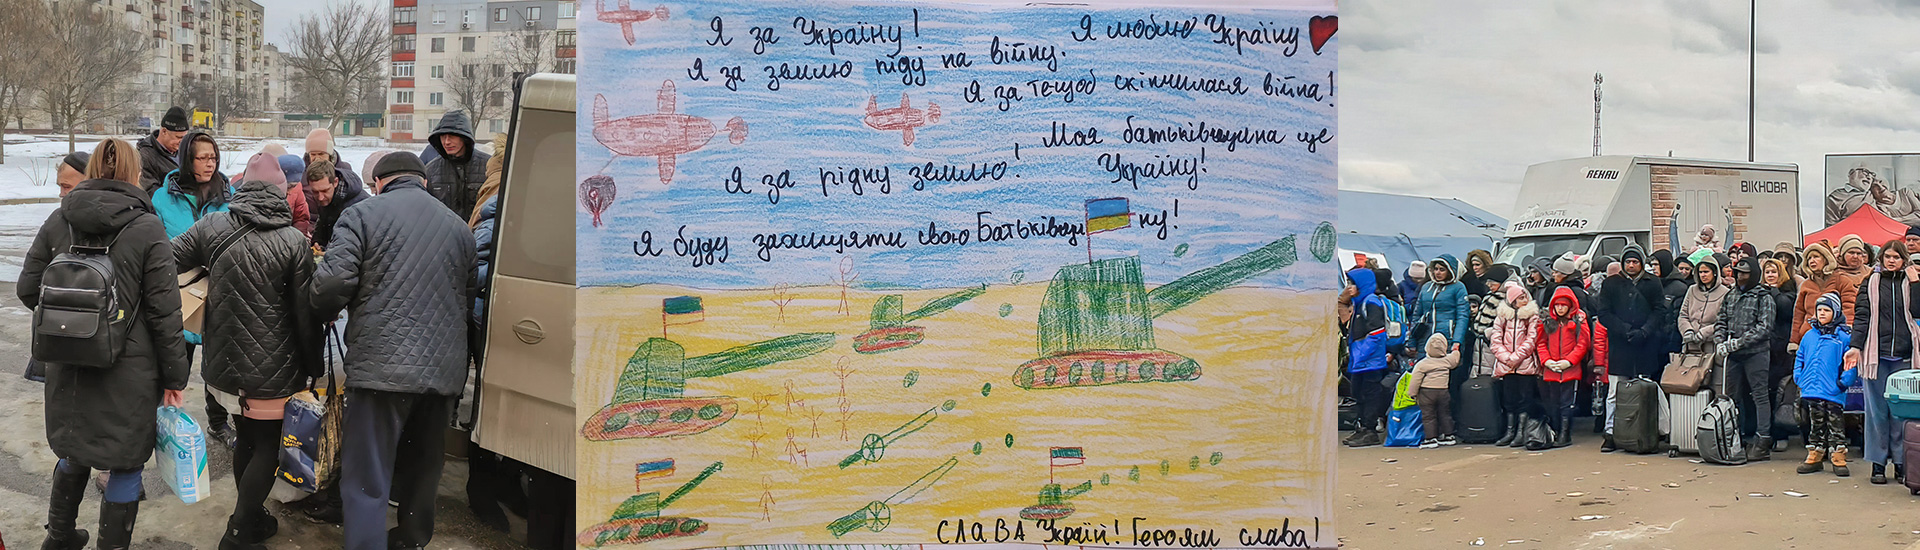 Emergencia Ucrania. “¿Cuándo podremos volver a casa?”, el grito desesperado de muchos menores